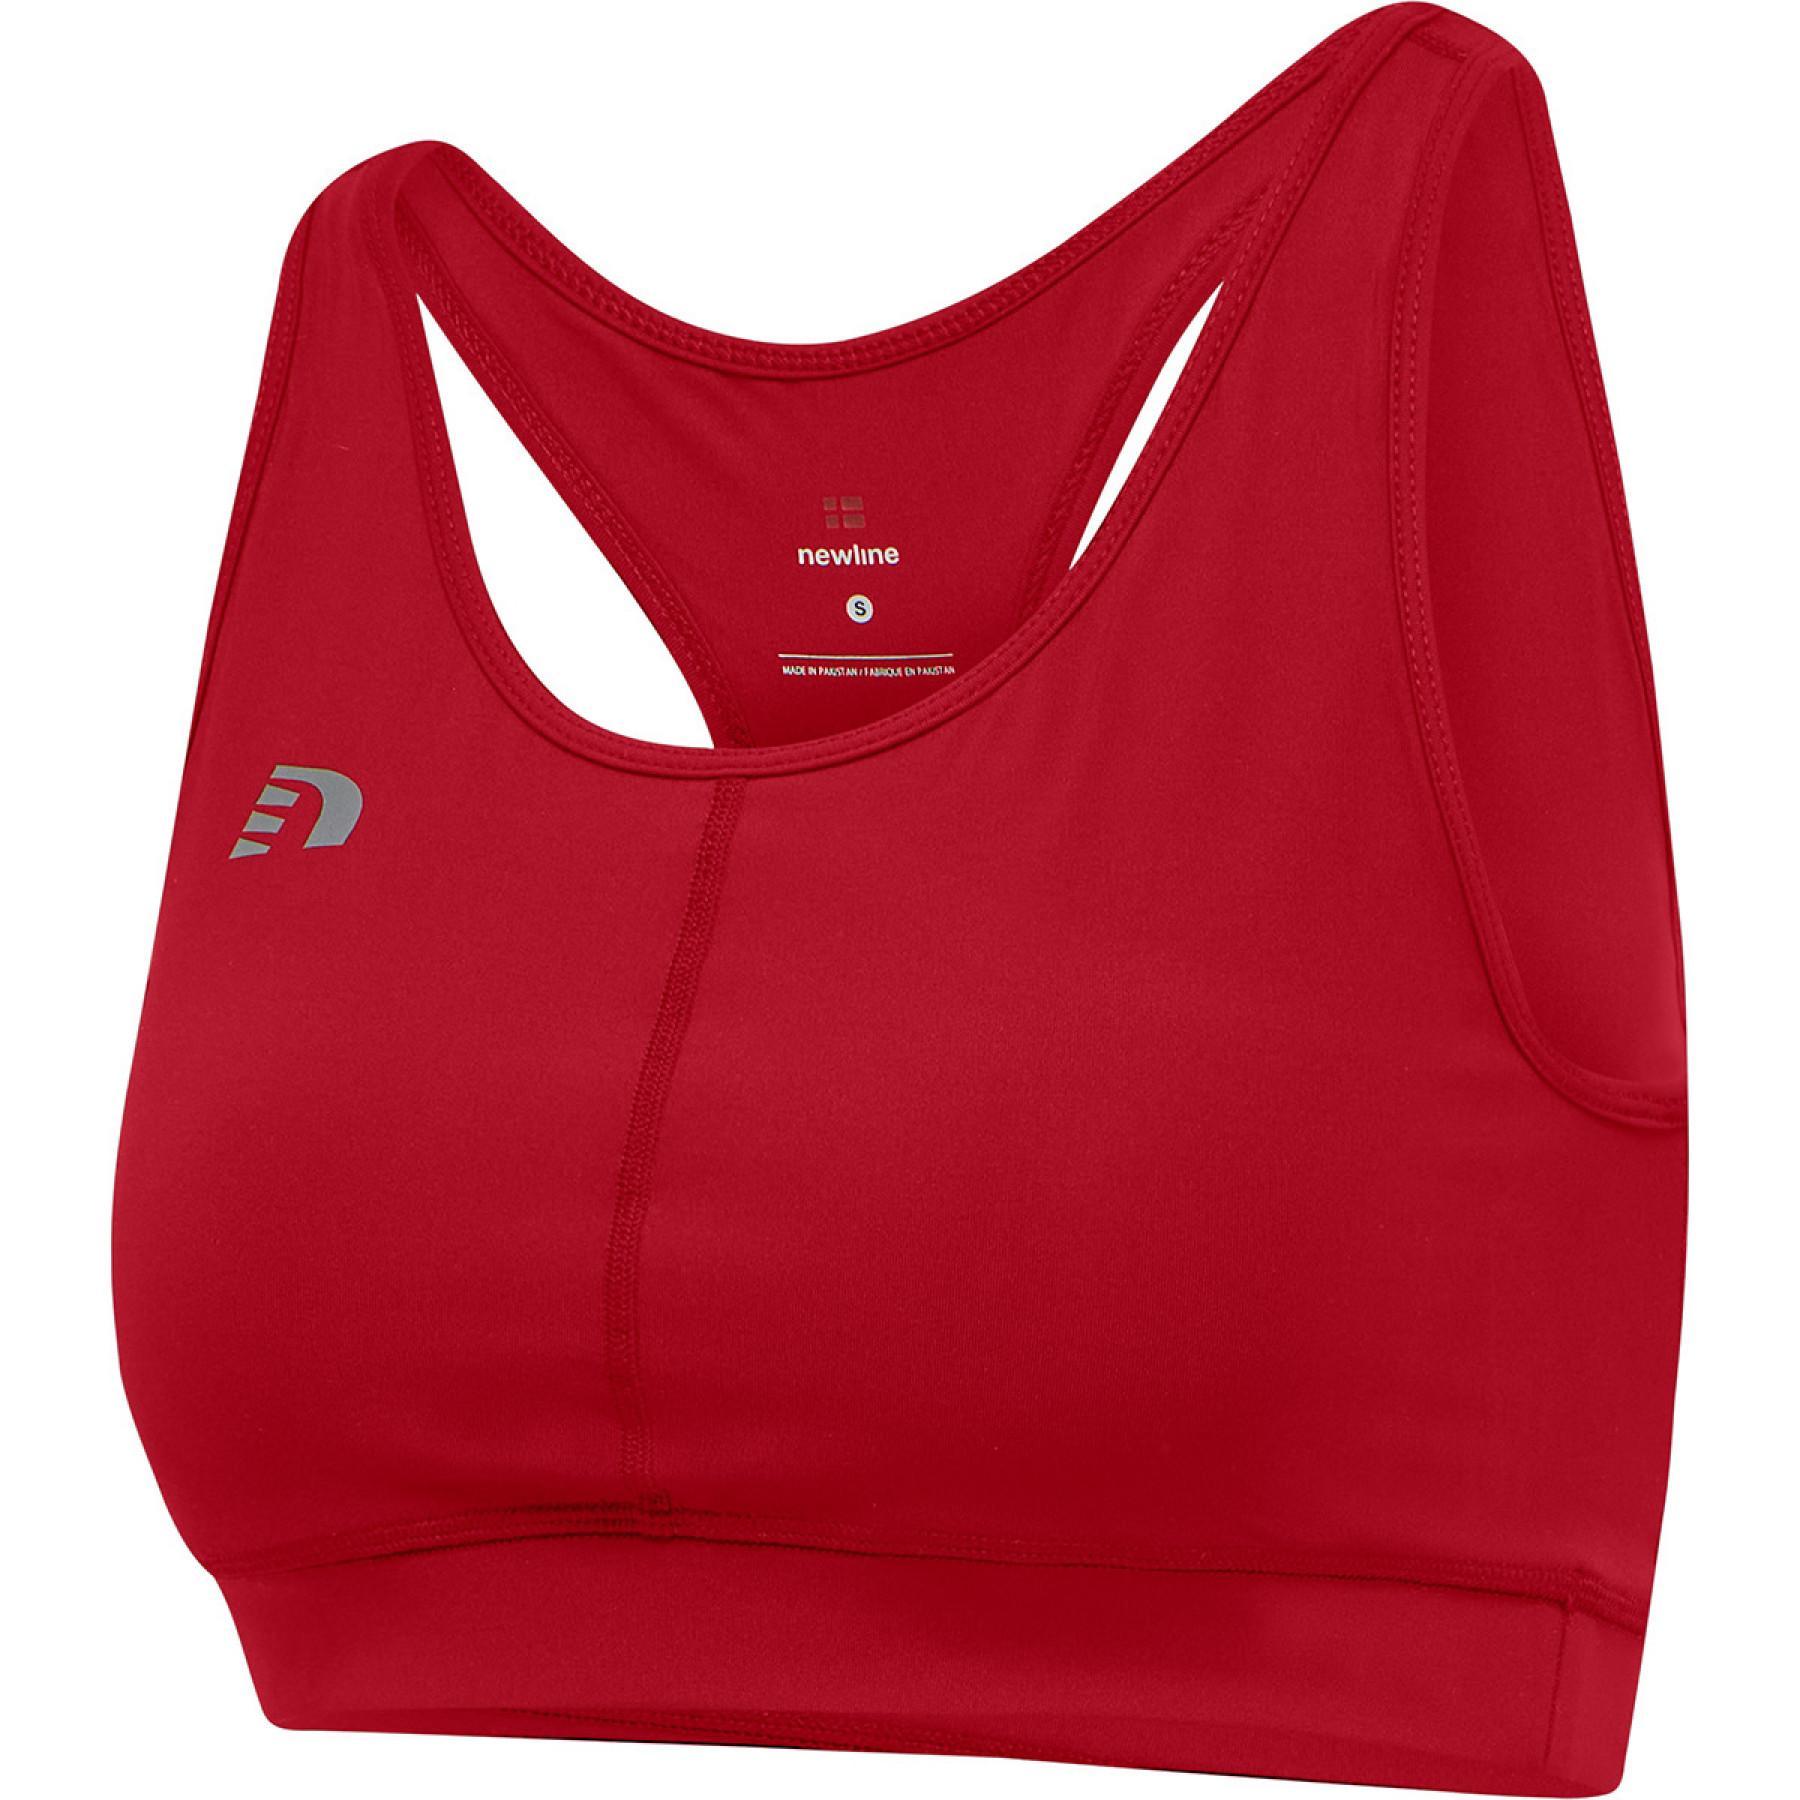 Women's bra Newline core athletic - Sports bras - Women's wear - Handball  wear